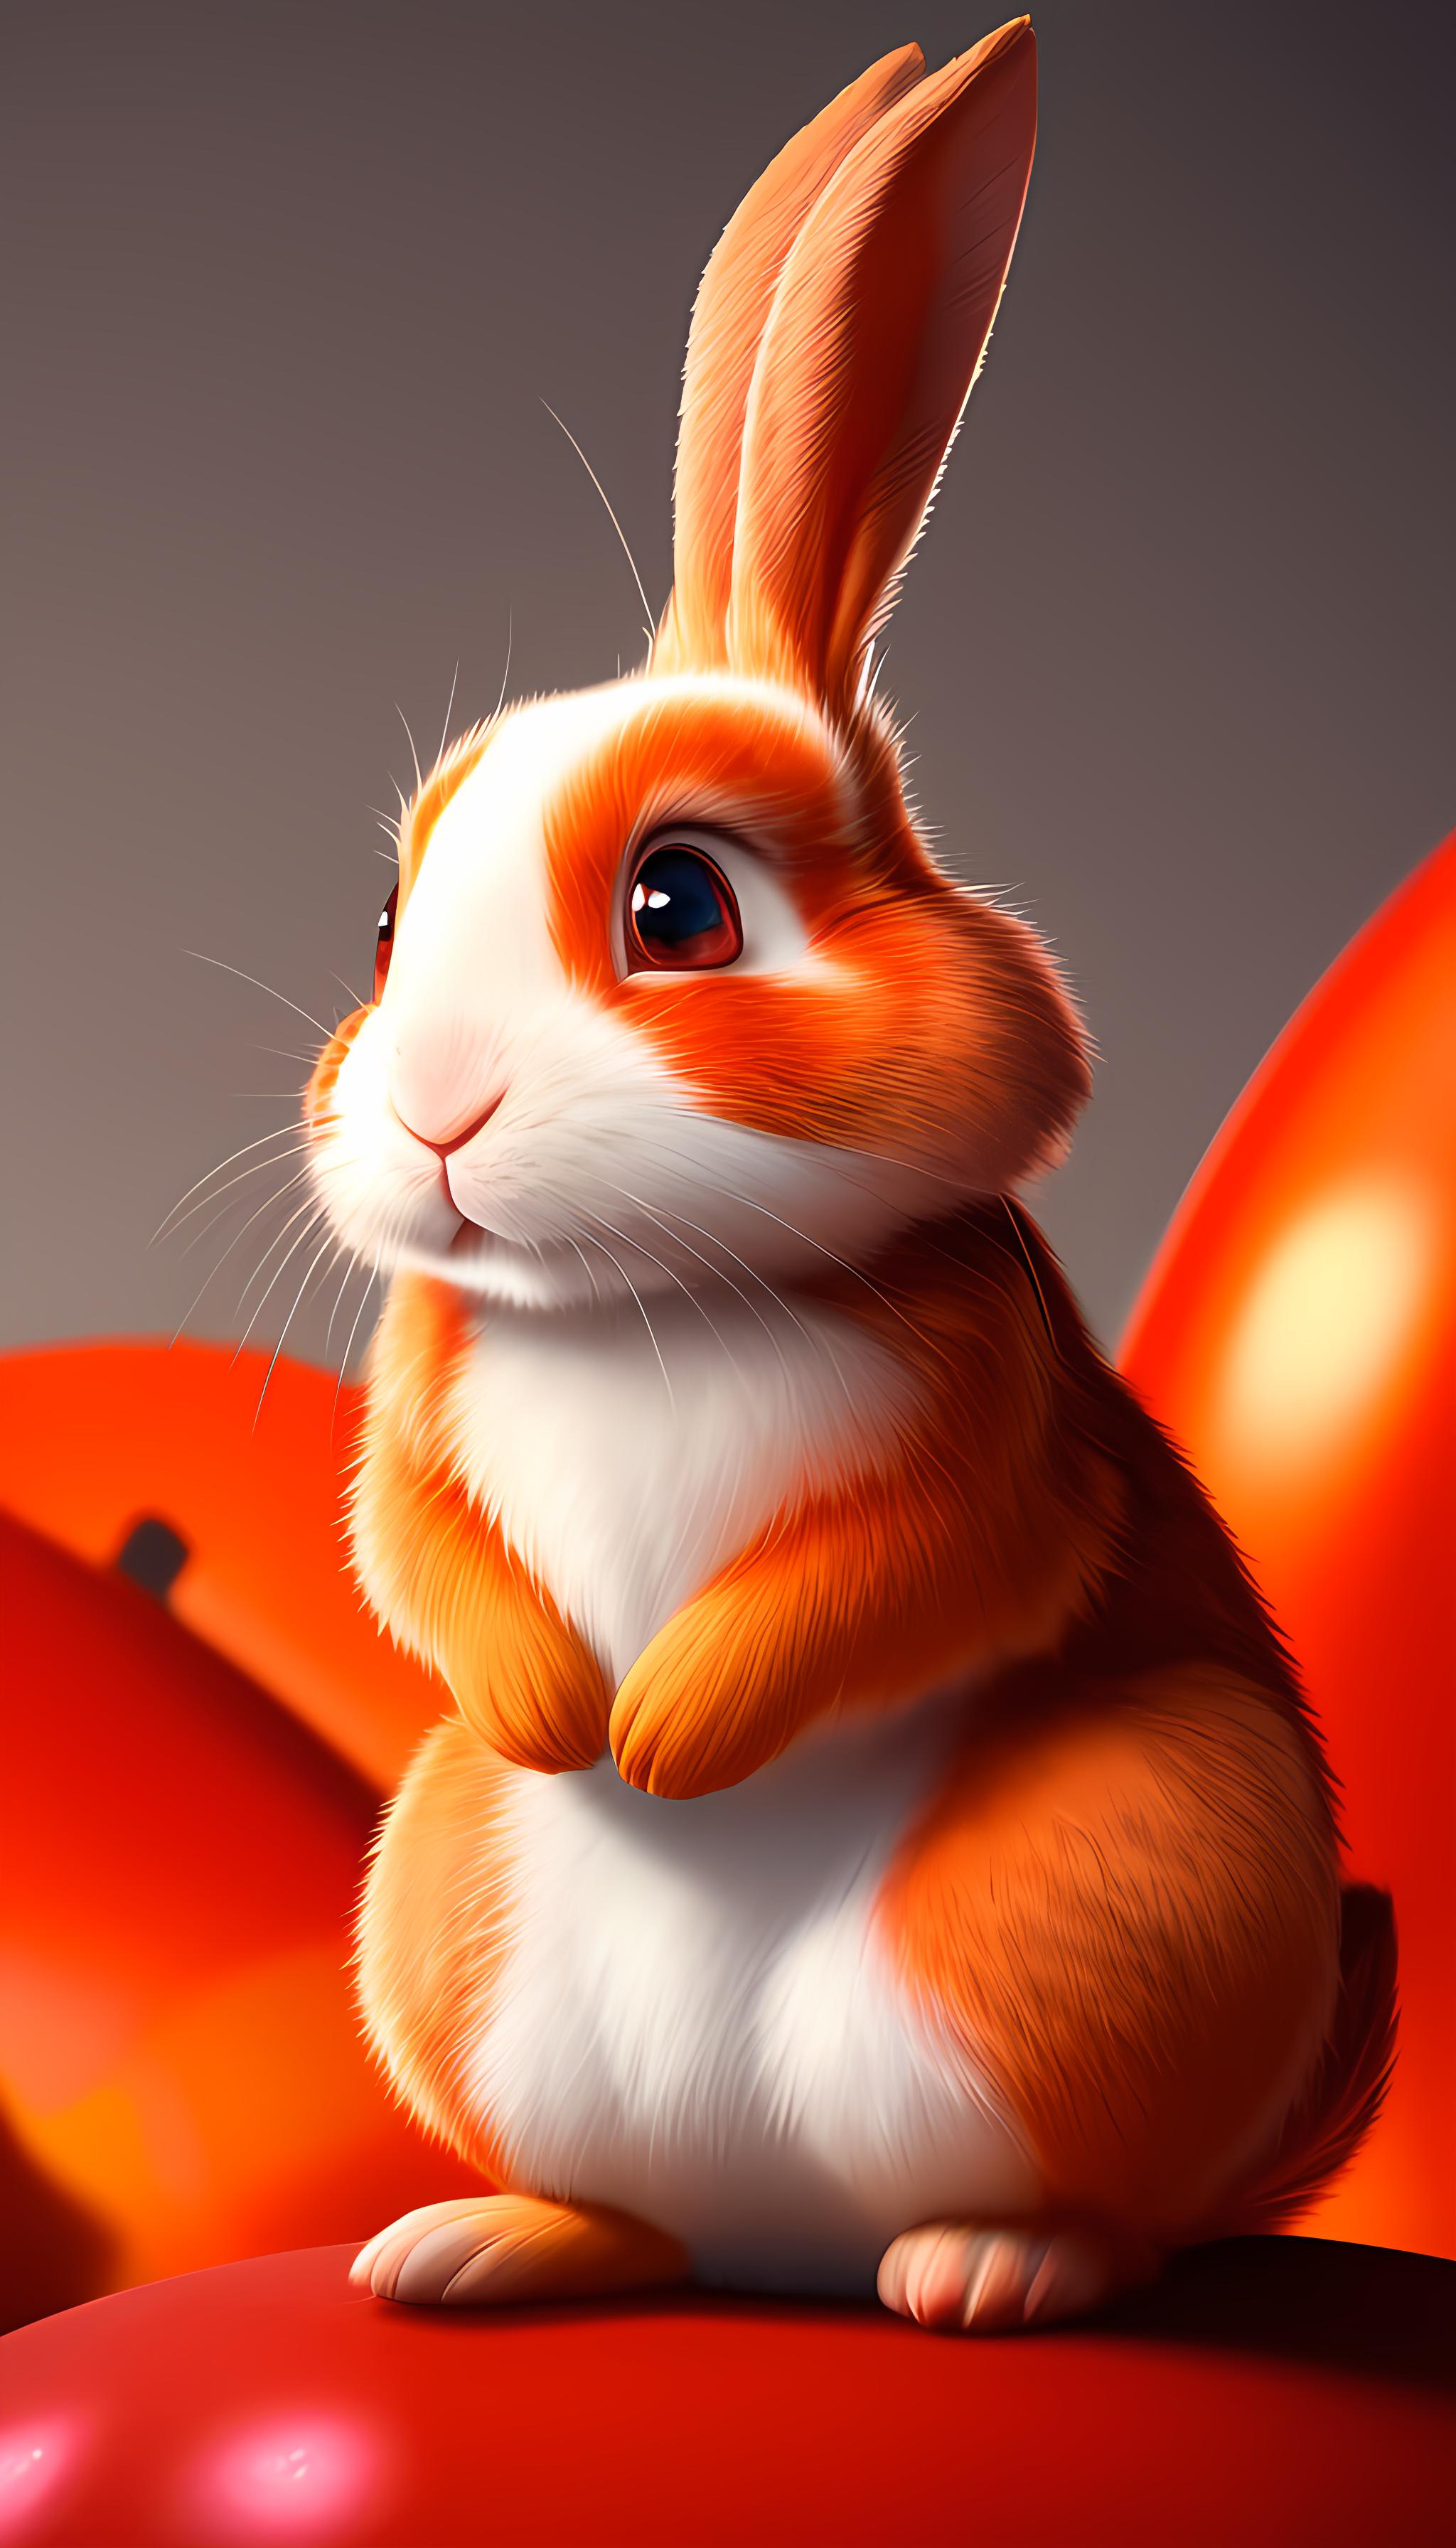 兔子爱吃辣椒了